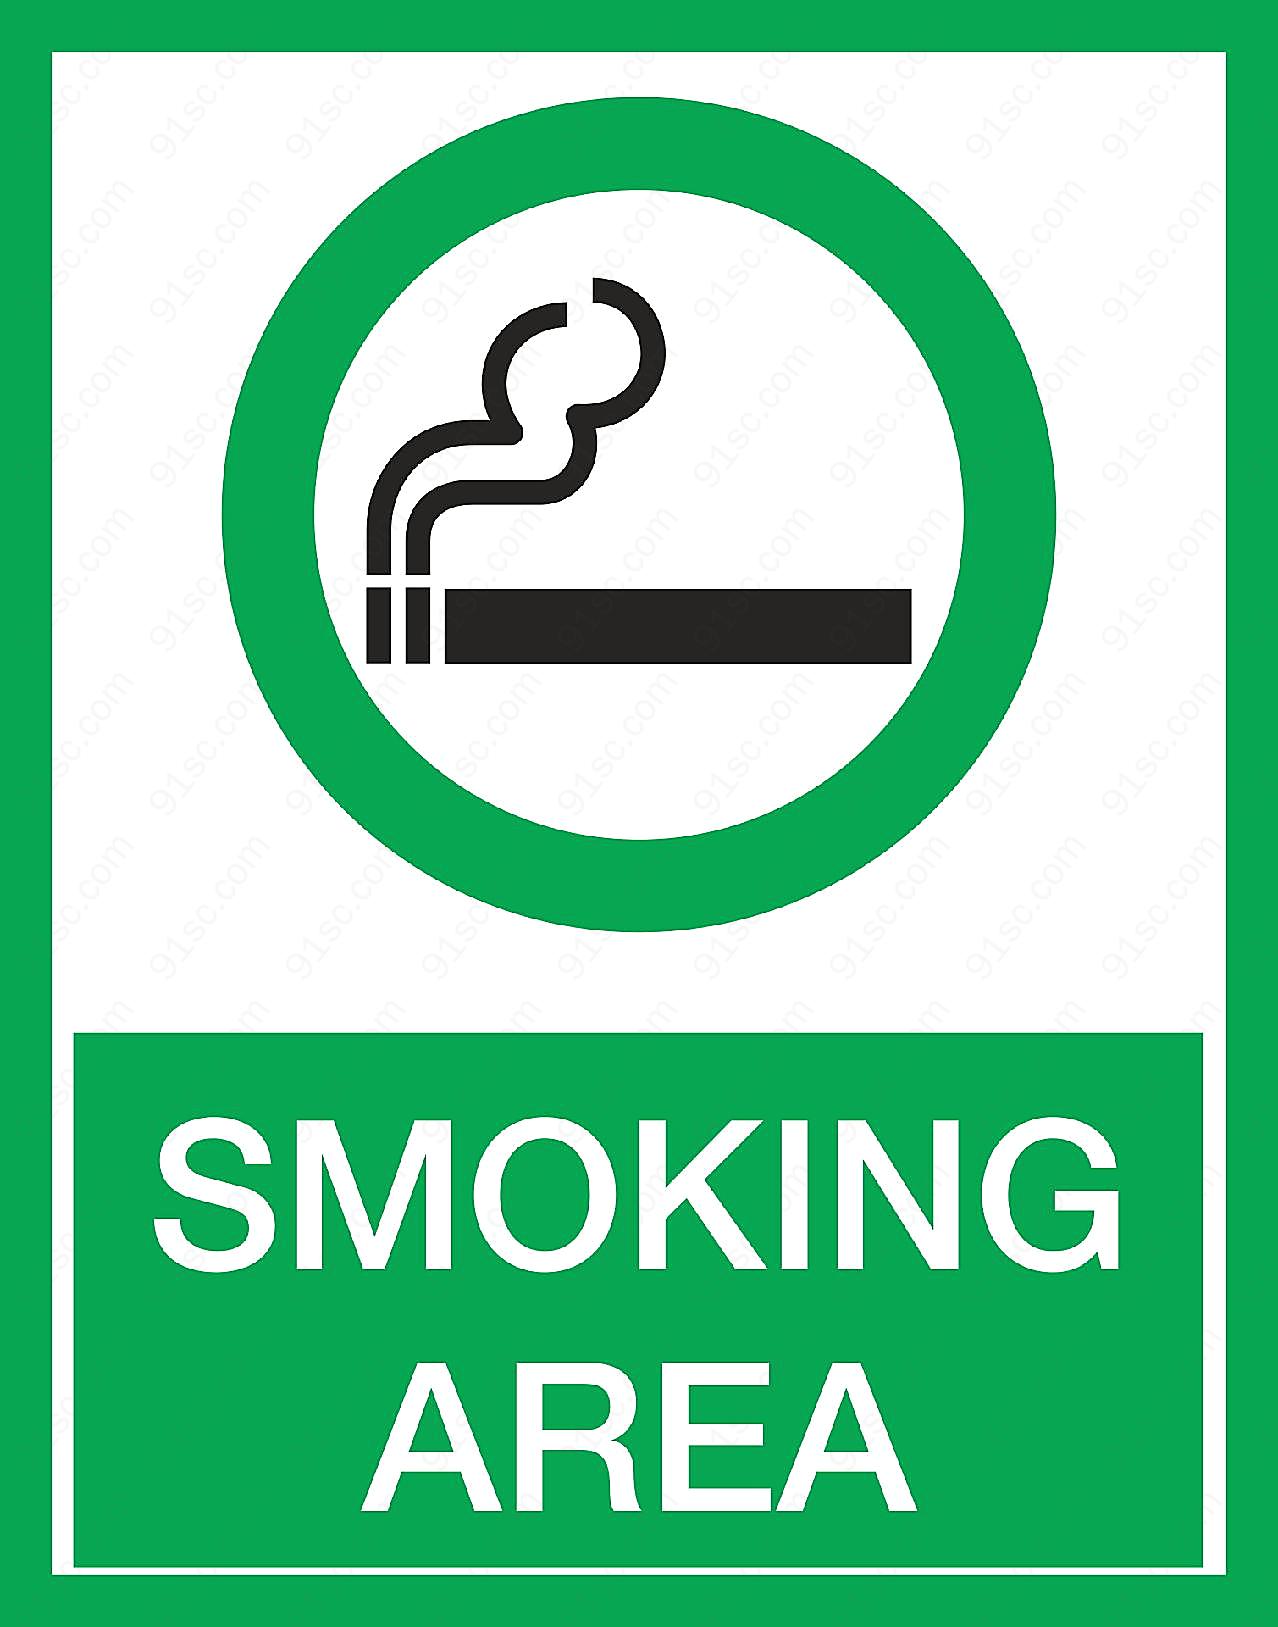 吸烟区标志图片高清